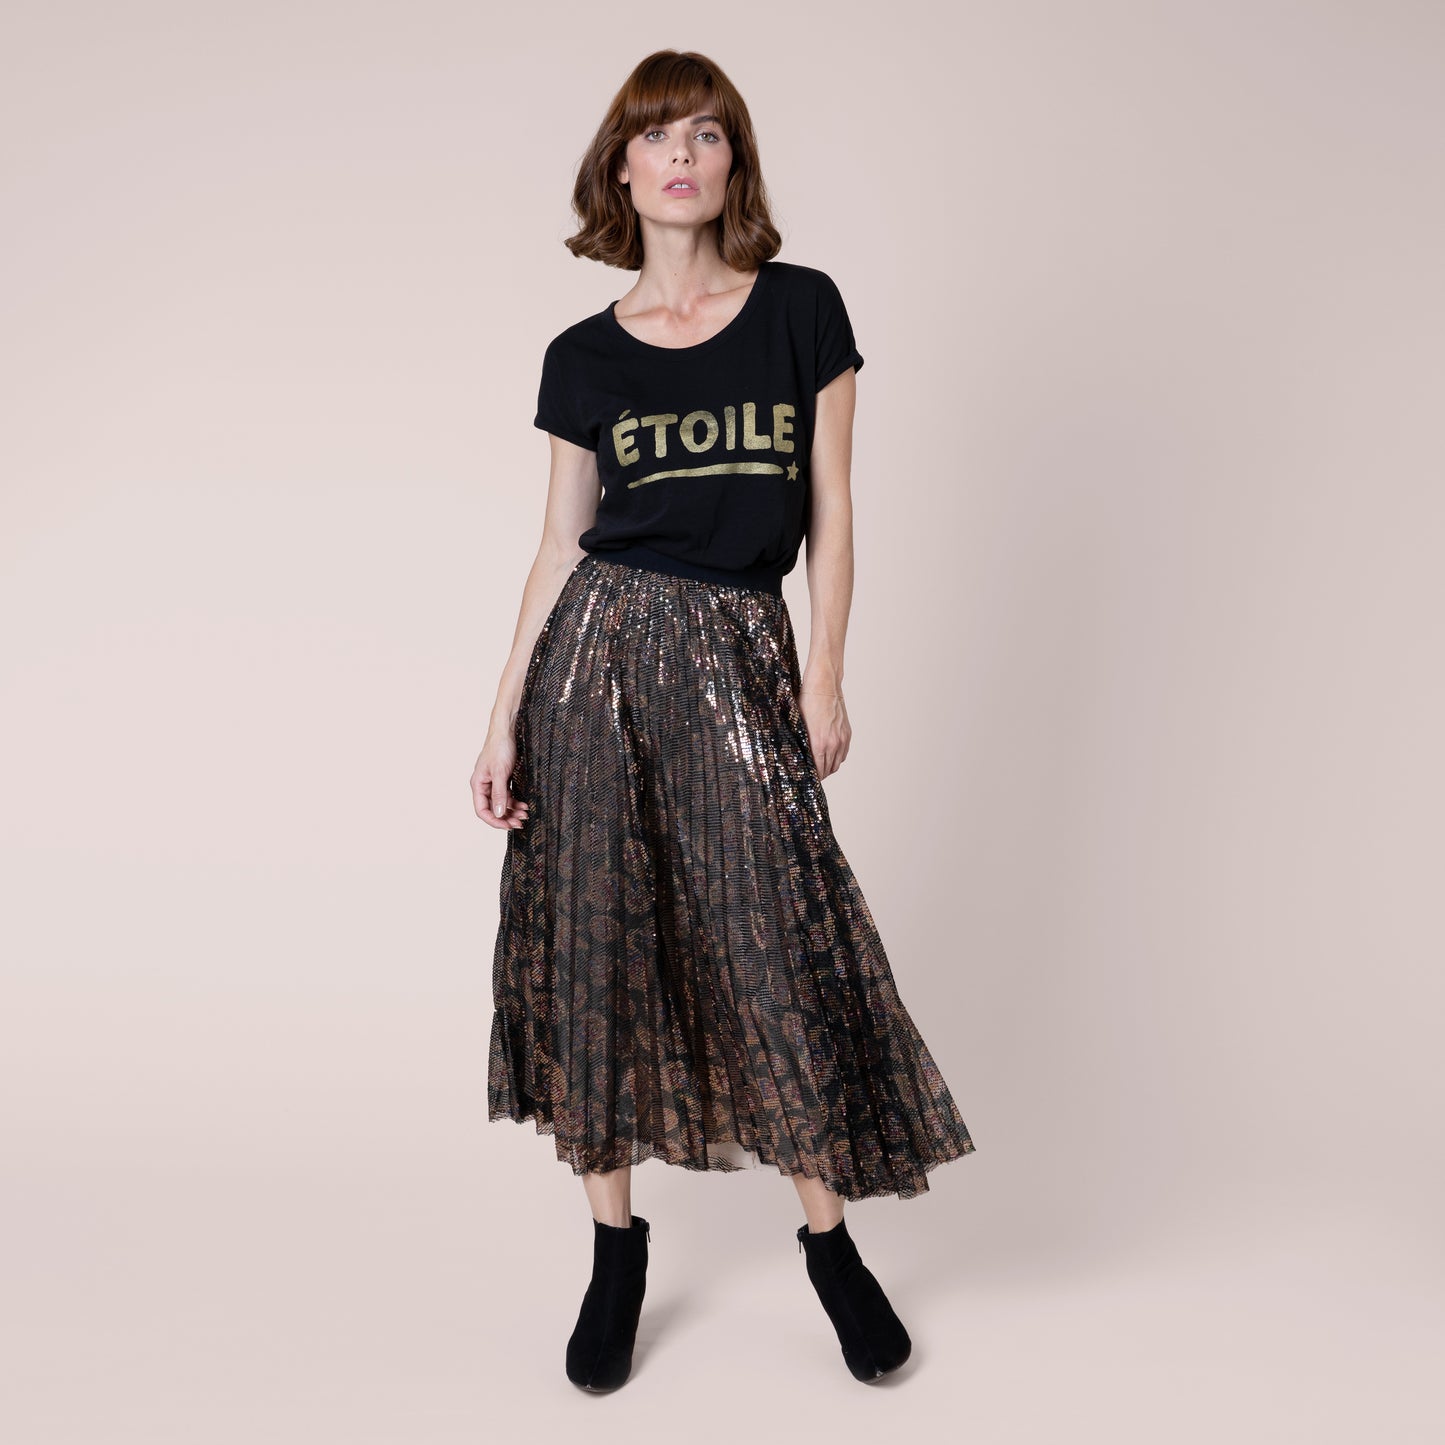 Ella Animal Print Sequin Skirt metallic skirt animal print skirt midi skit eleven loves ellen loves 11loves sustainable 